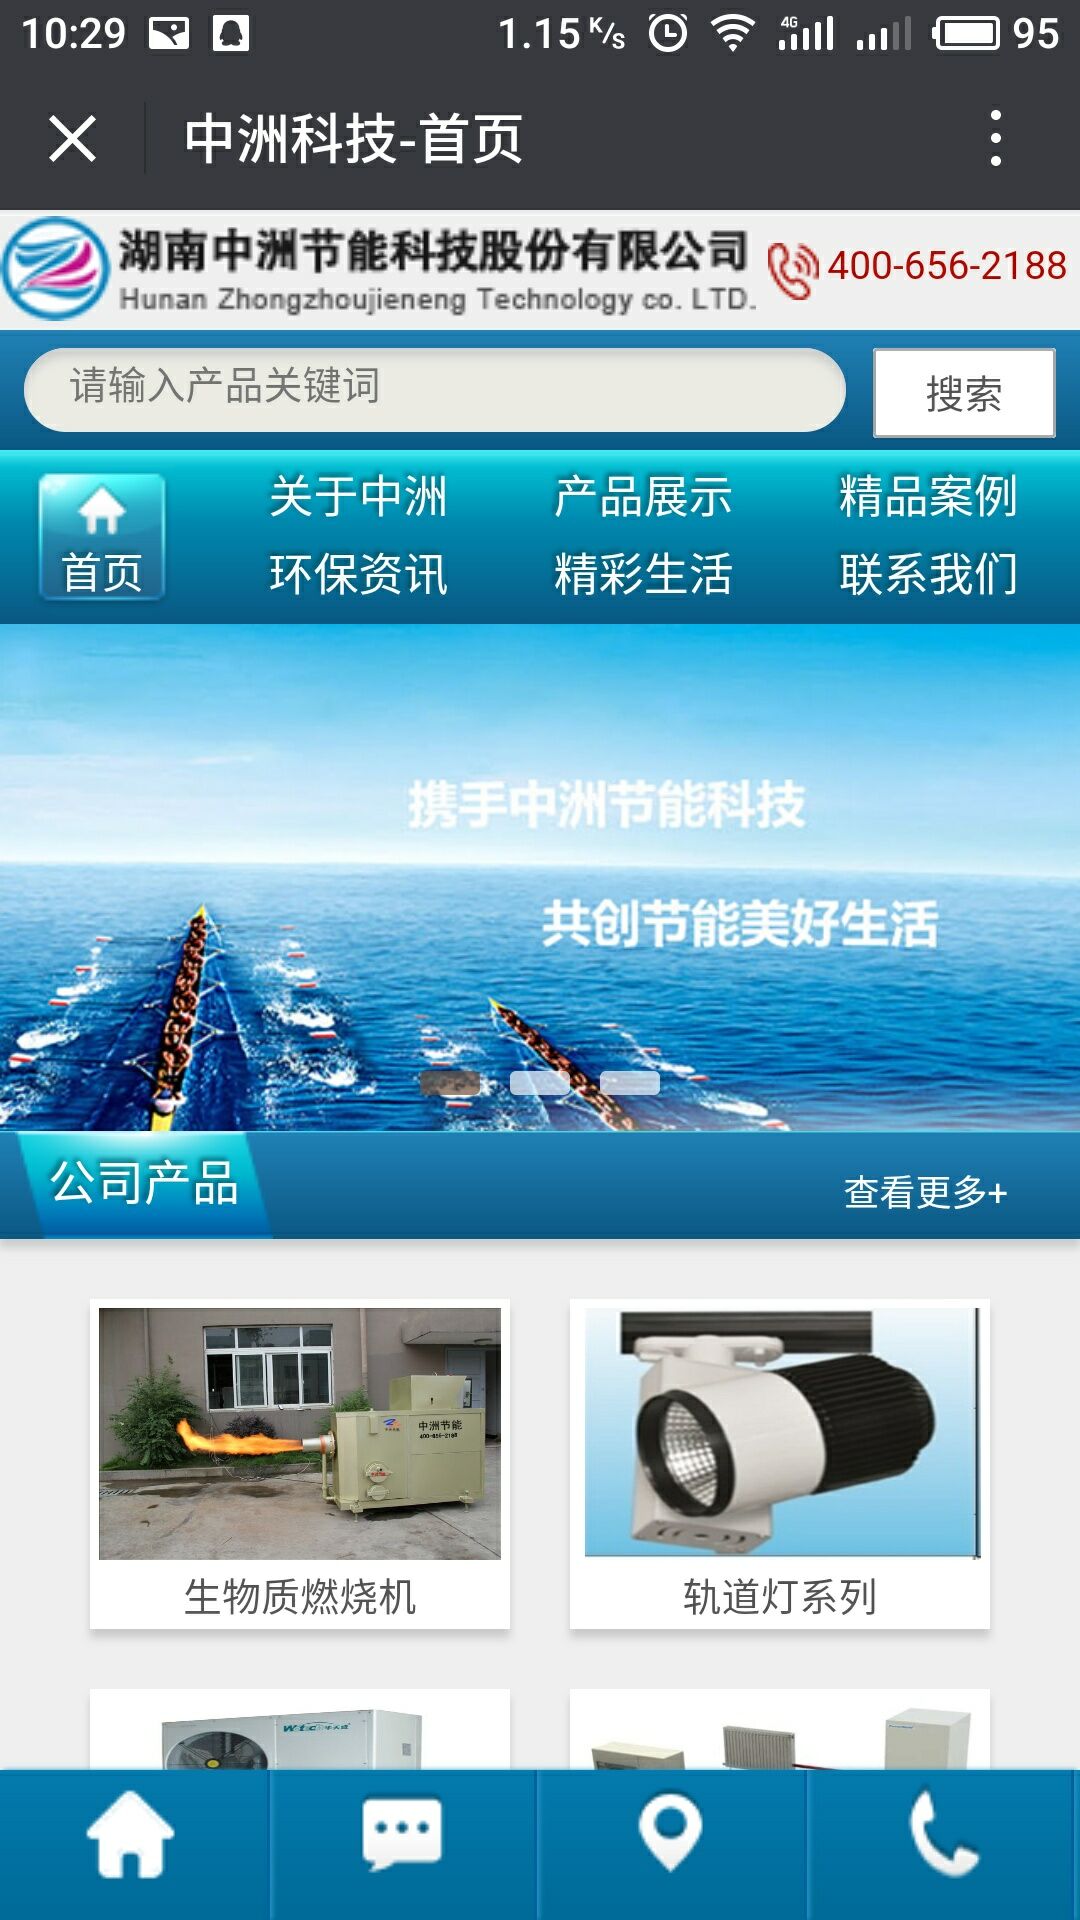 湖南中洲节能科技股份有限公司官网,长沙做网站,长沙微信小程序